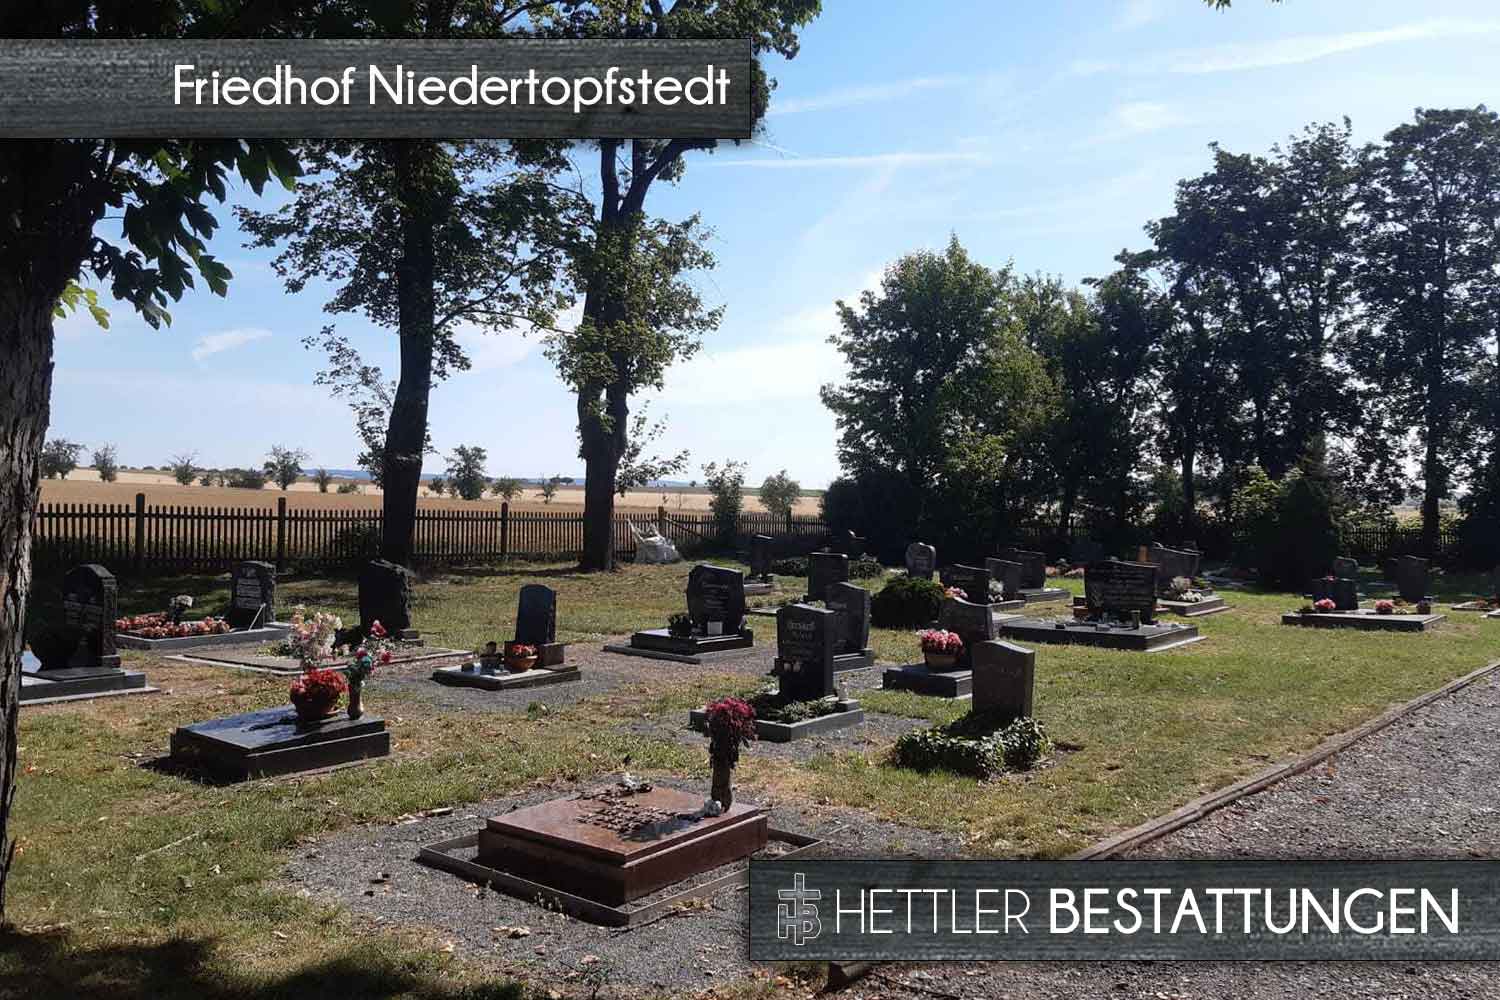 Friedhof in Niedertopfstedt. Ihr Ort des Abschieds mit Hettler Bestattungen.